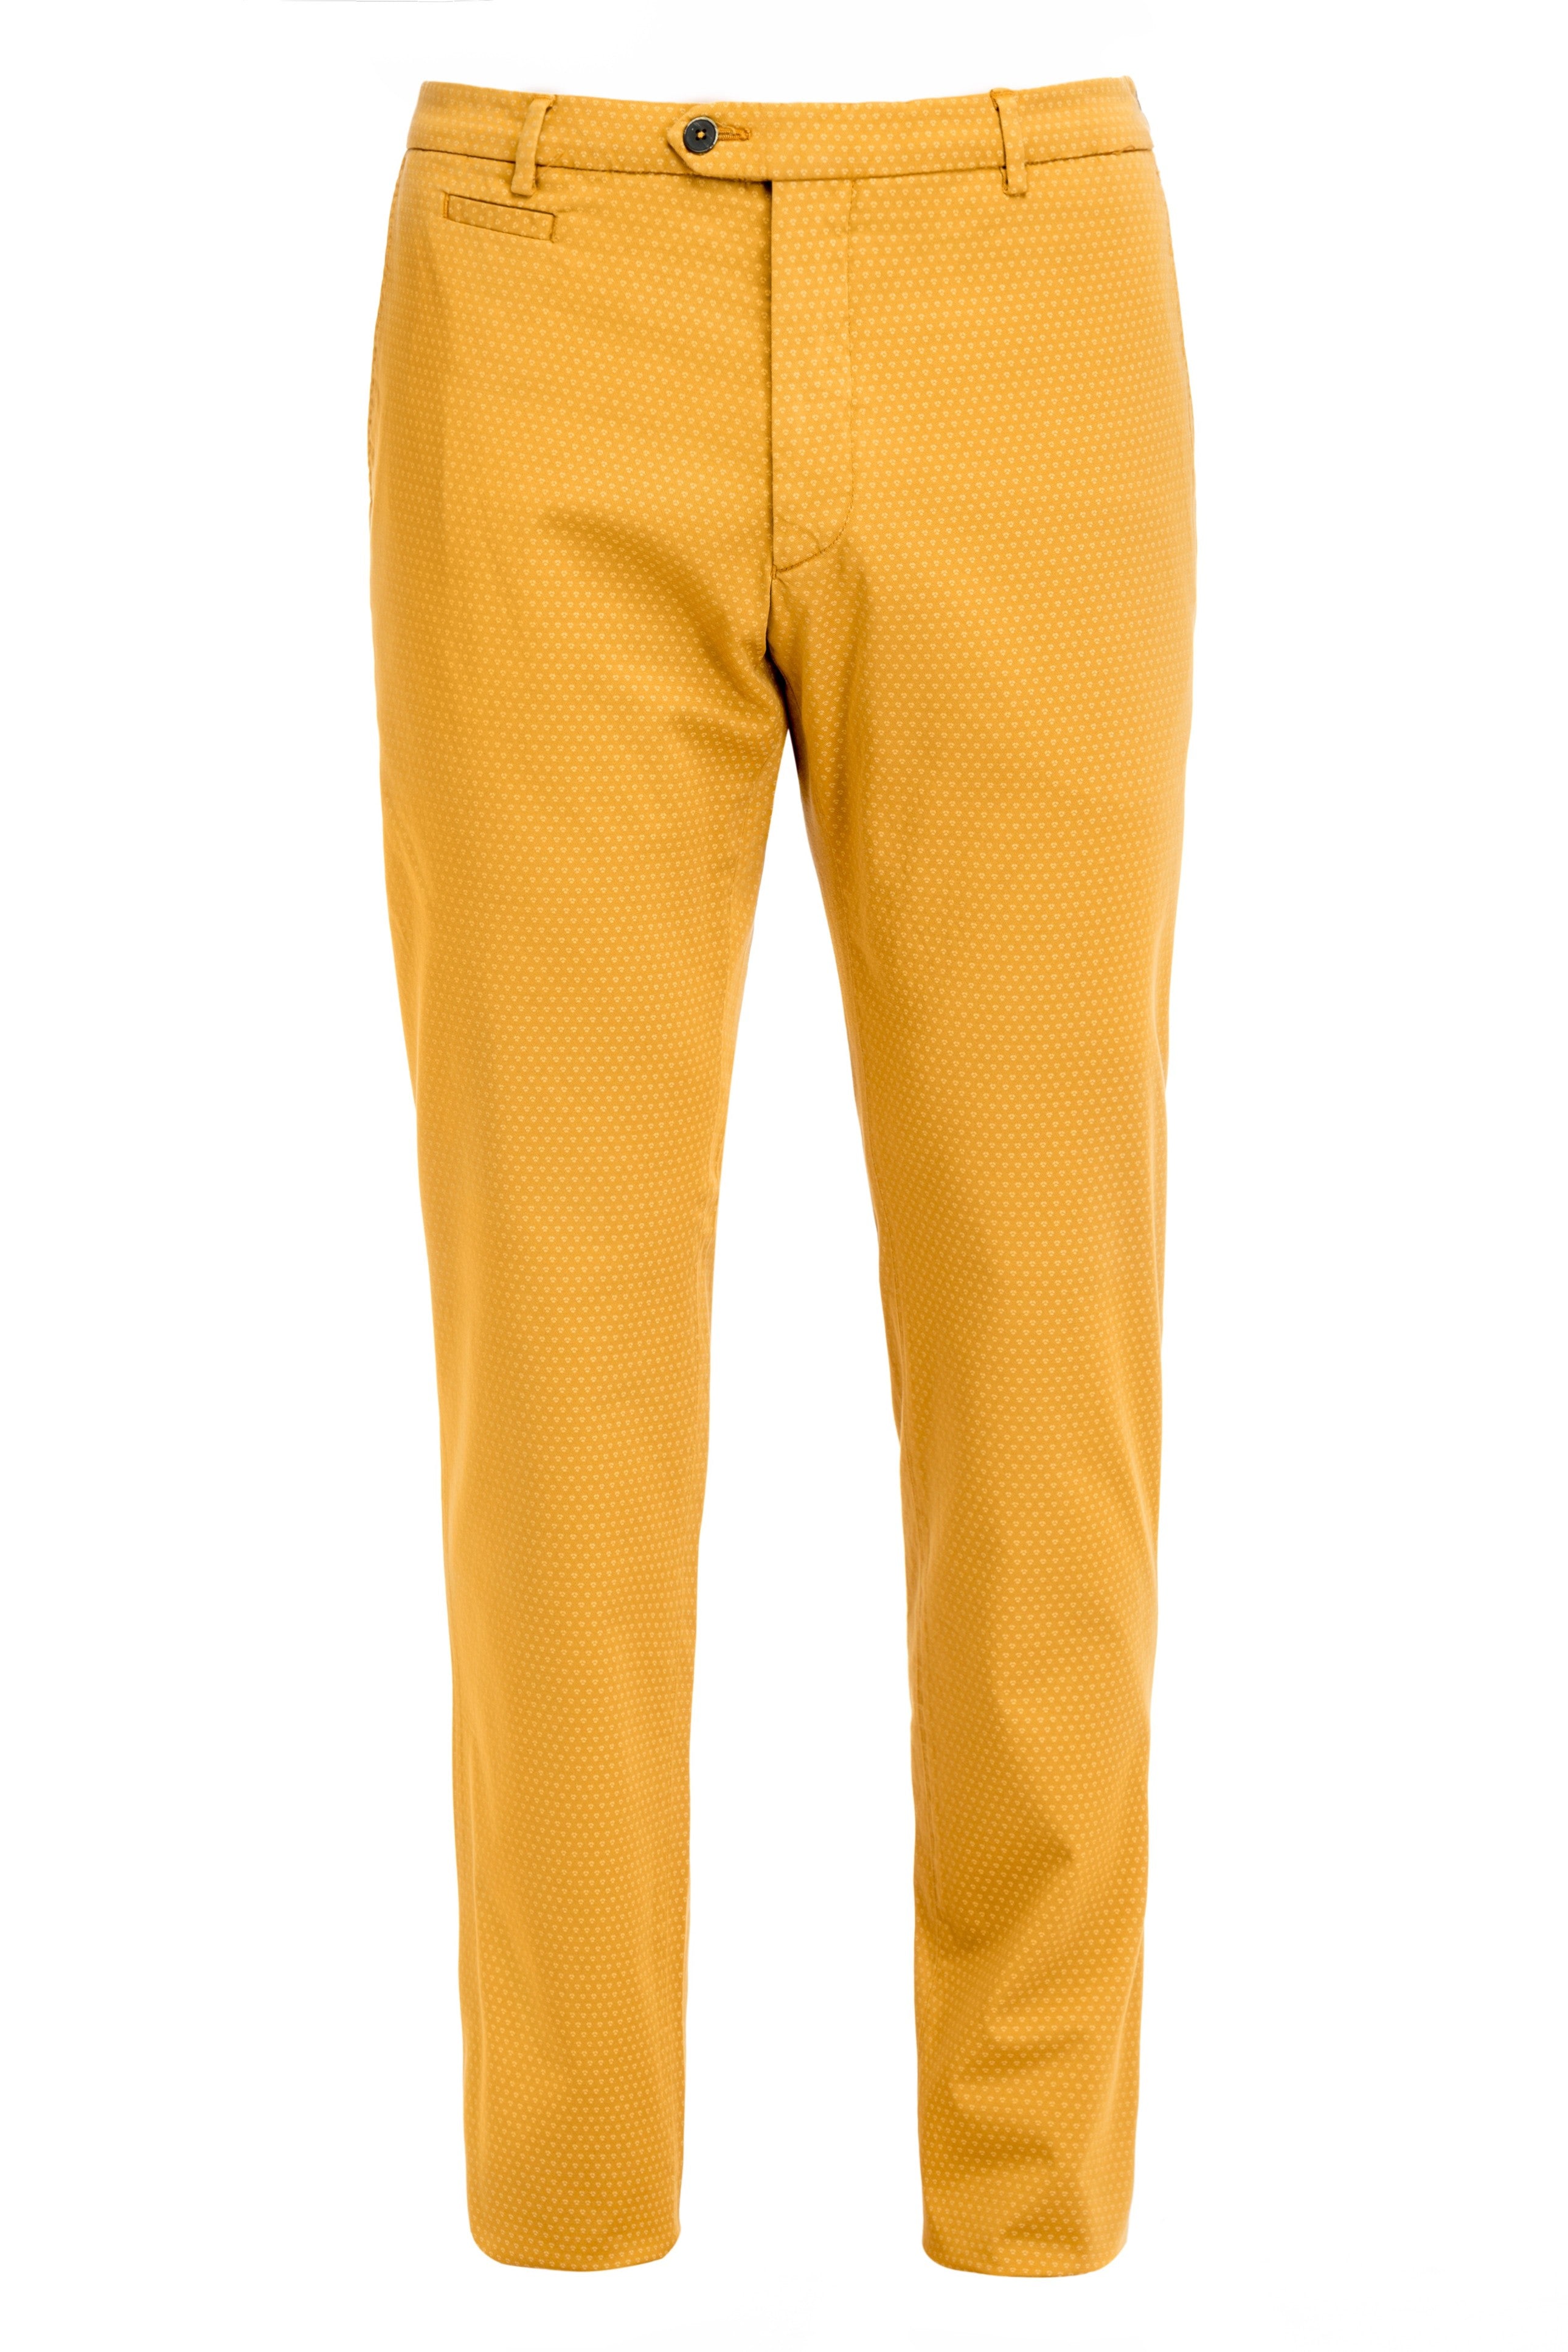 Yellow Chinos Pants